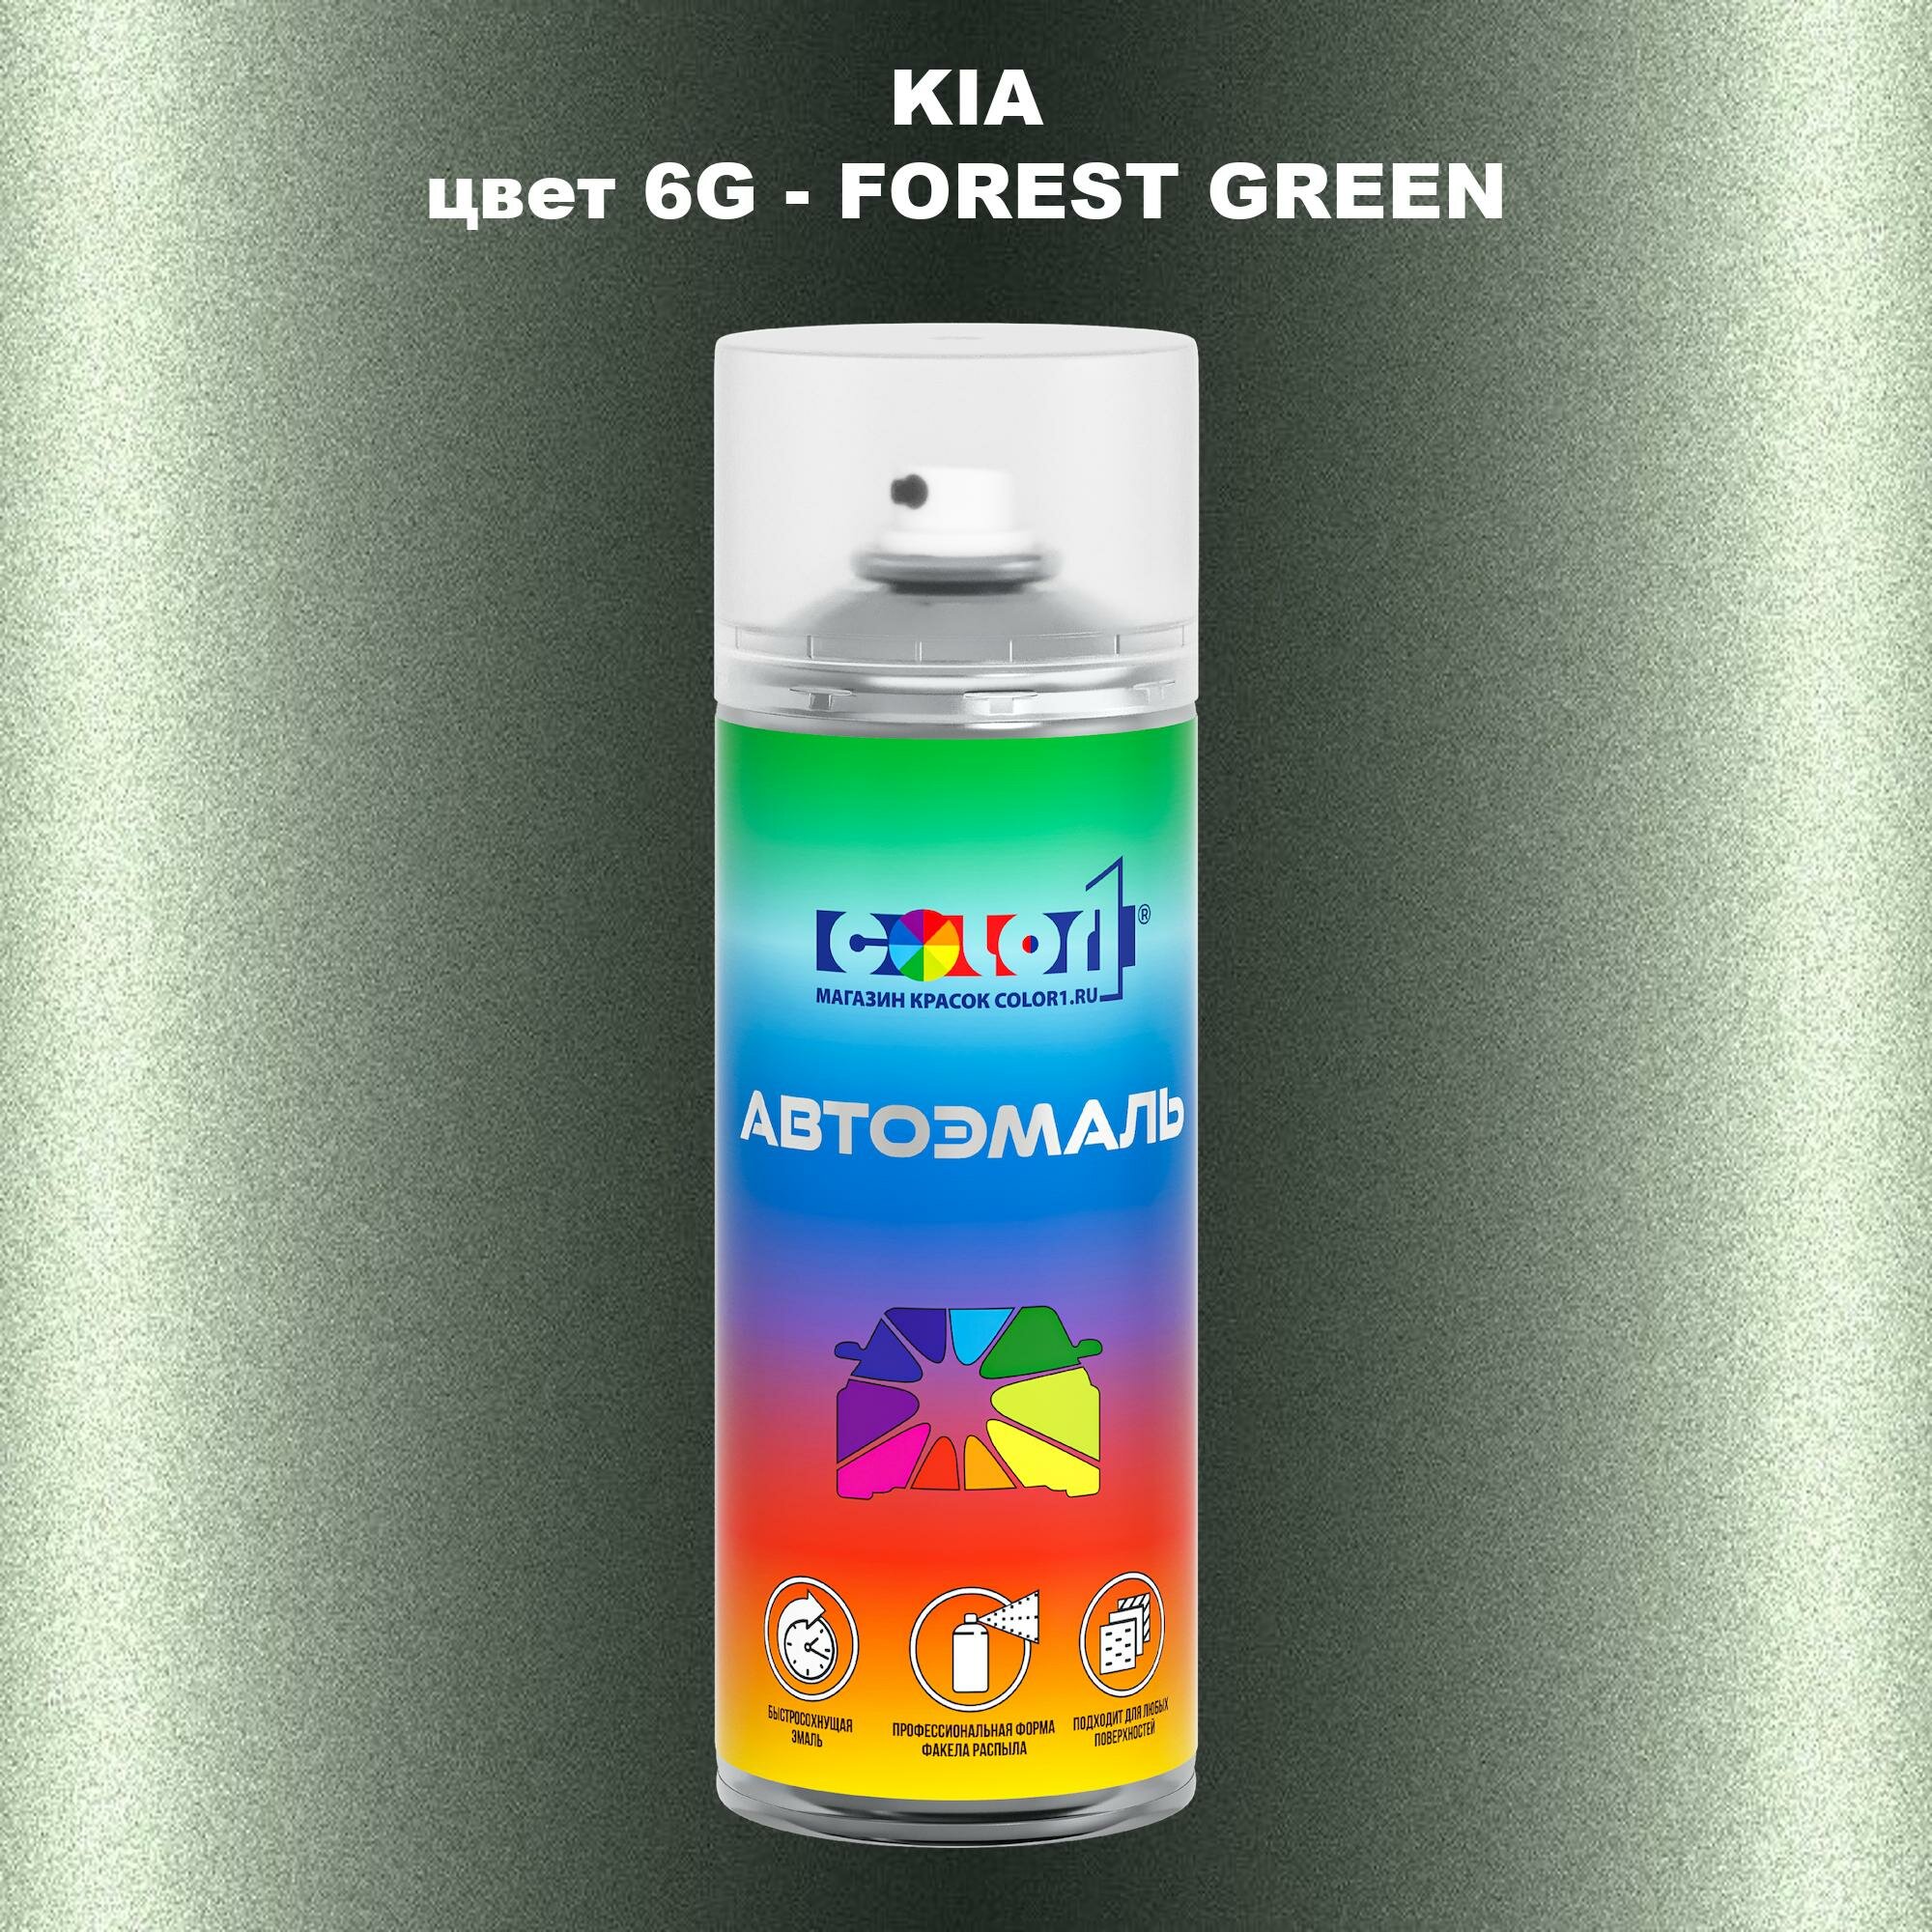 Аэрозольная краска COLOR1 для KIA, цвет 6G - FOREST GREEN